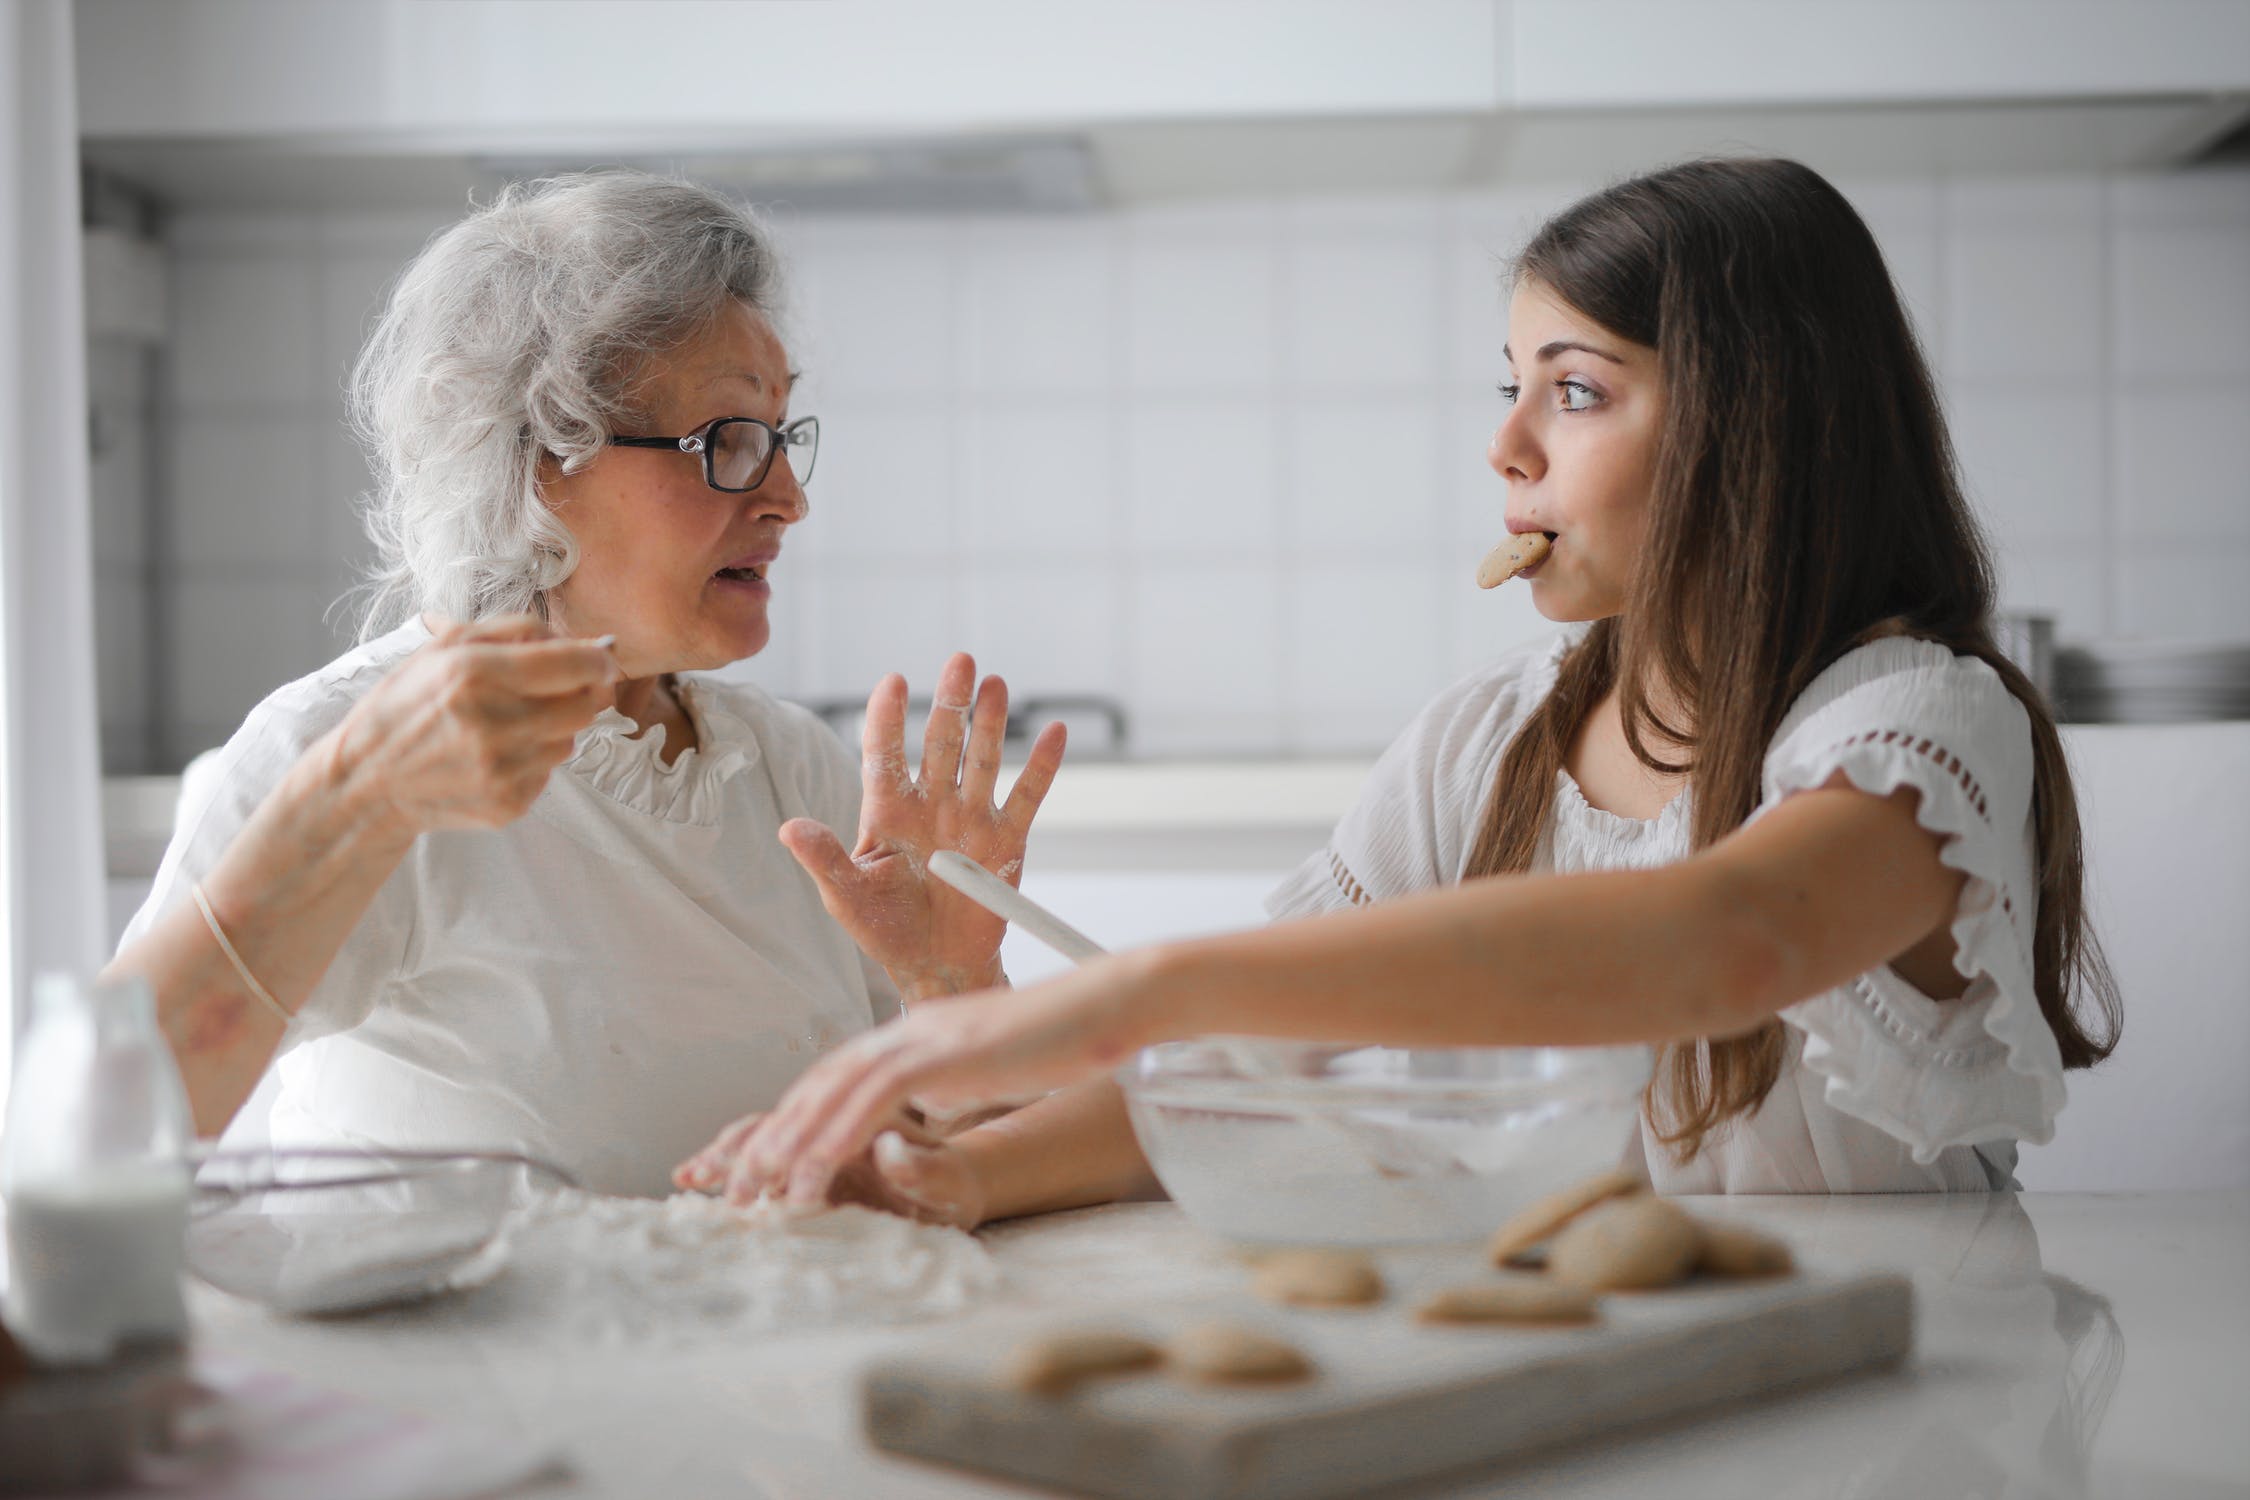 Abuela haciendo galletas con una mujer joven. │Foto: Pexels